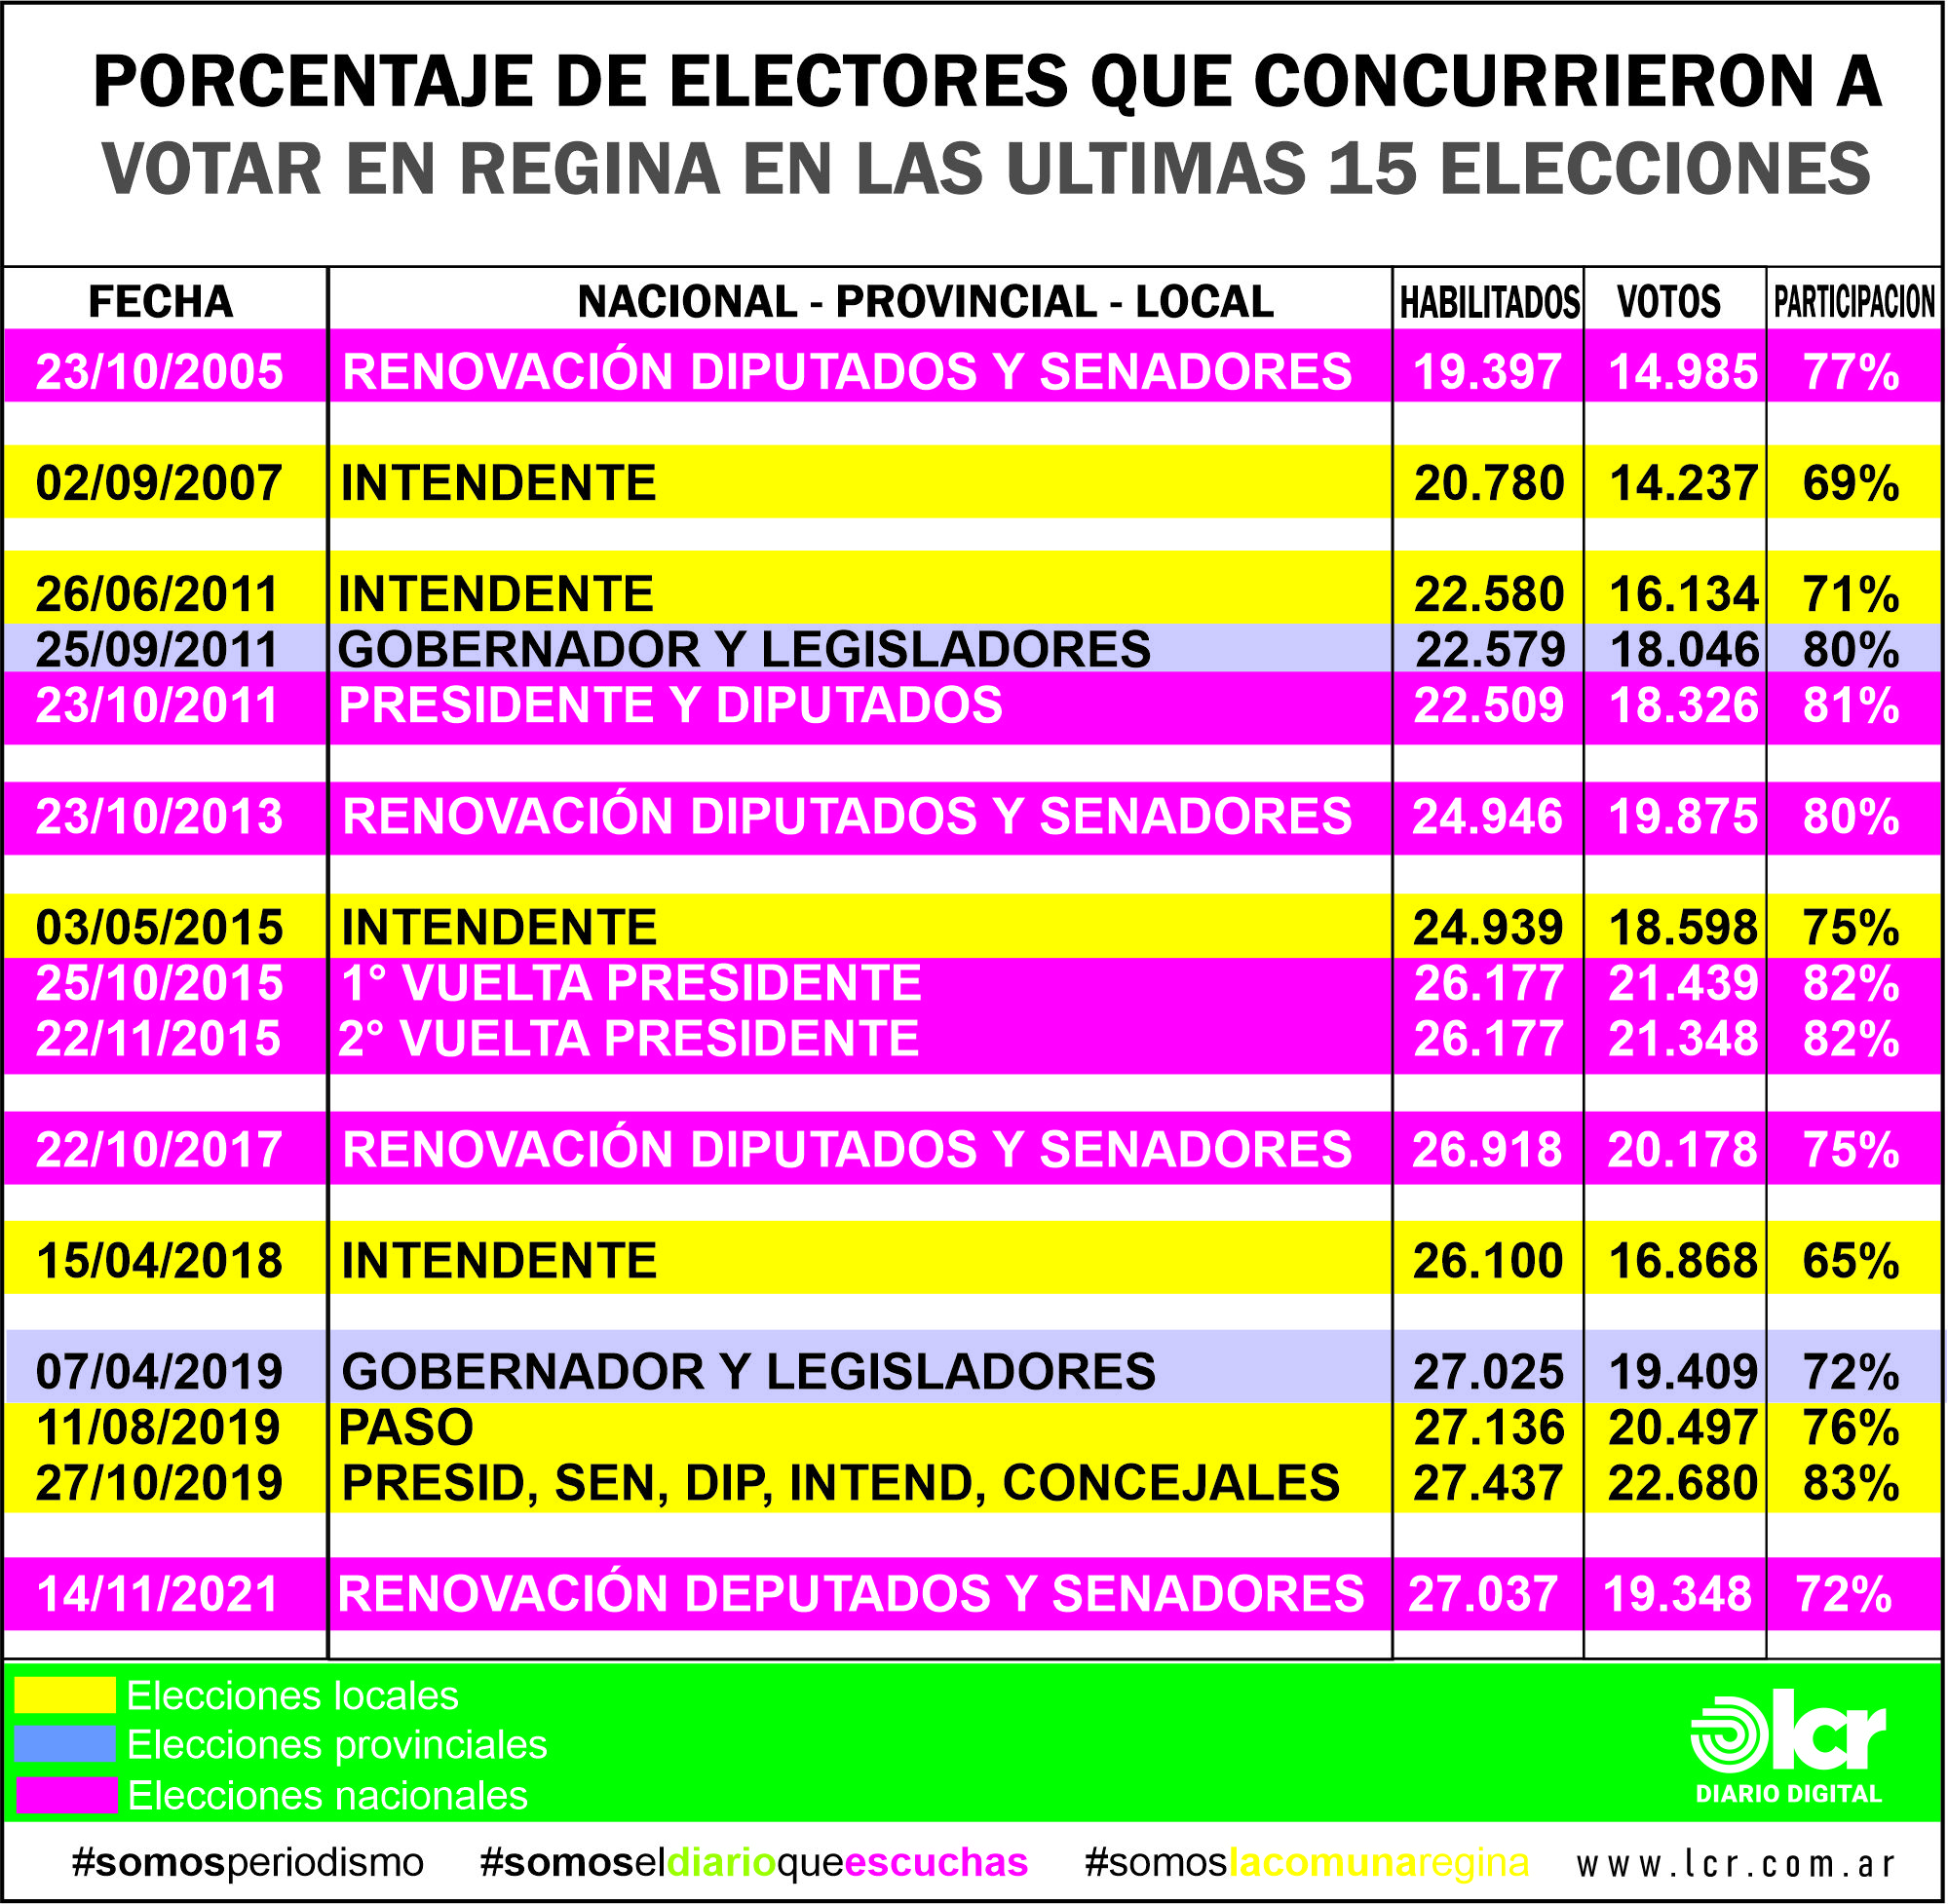 Datos obtenidos de la Secretaría Electoral Nacional y del Registro de Electores de Río Negro.